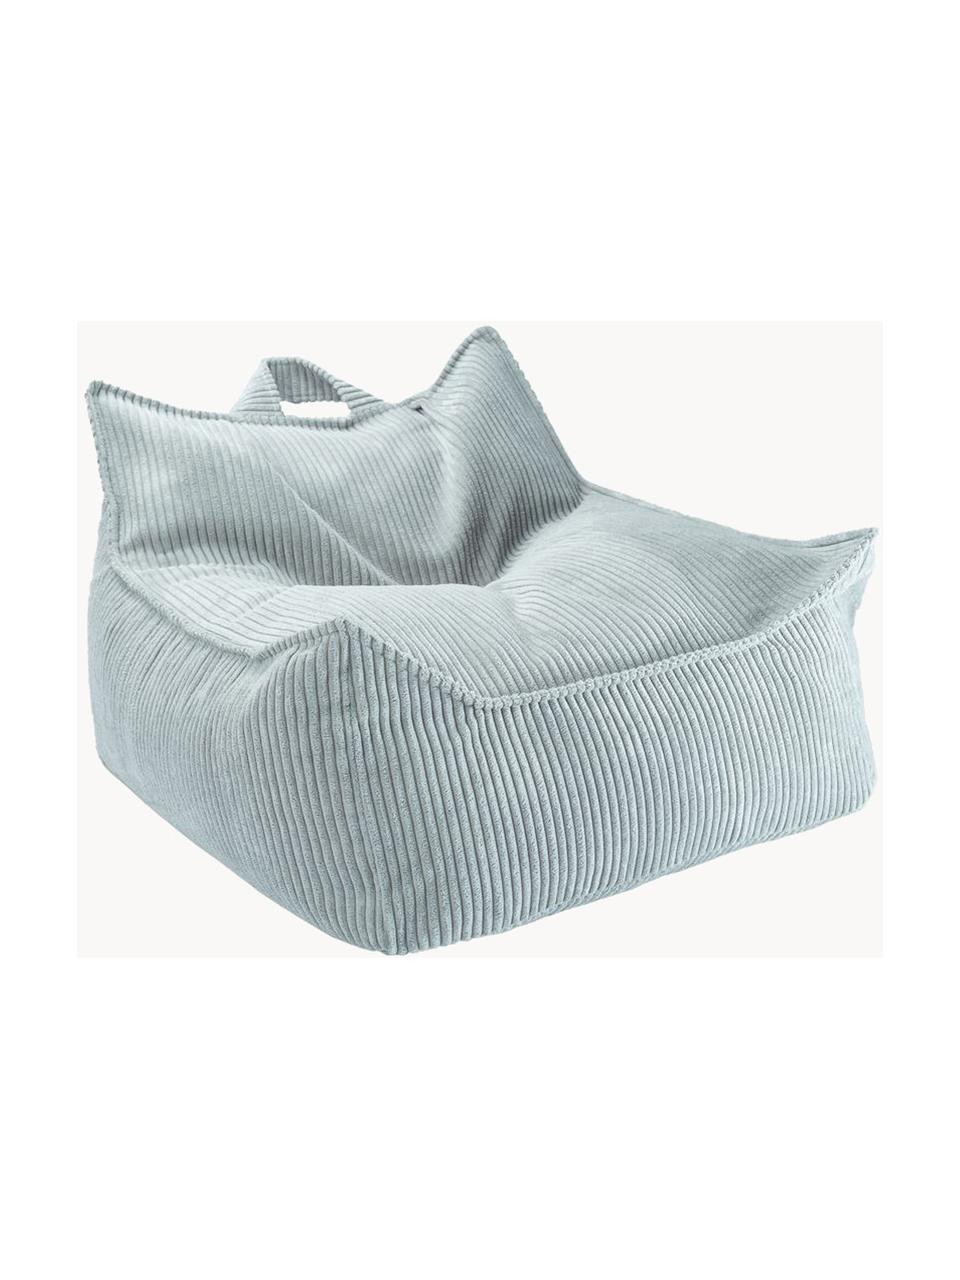 Kinder-Sitzsack Sugar aus Cord, Bezug: Cord (100 % Polyester) au, Cord Hellblau, B 70 x T 80 cm